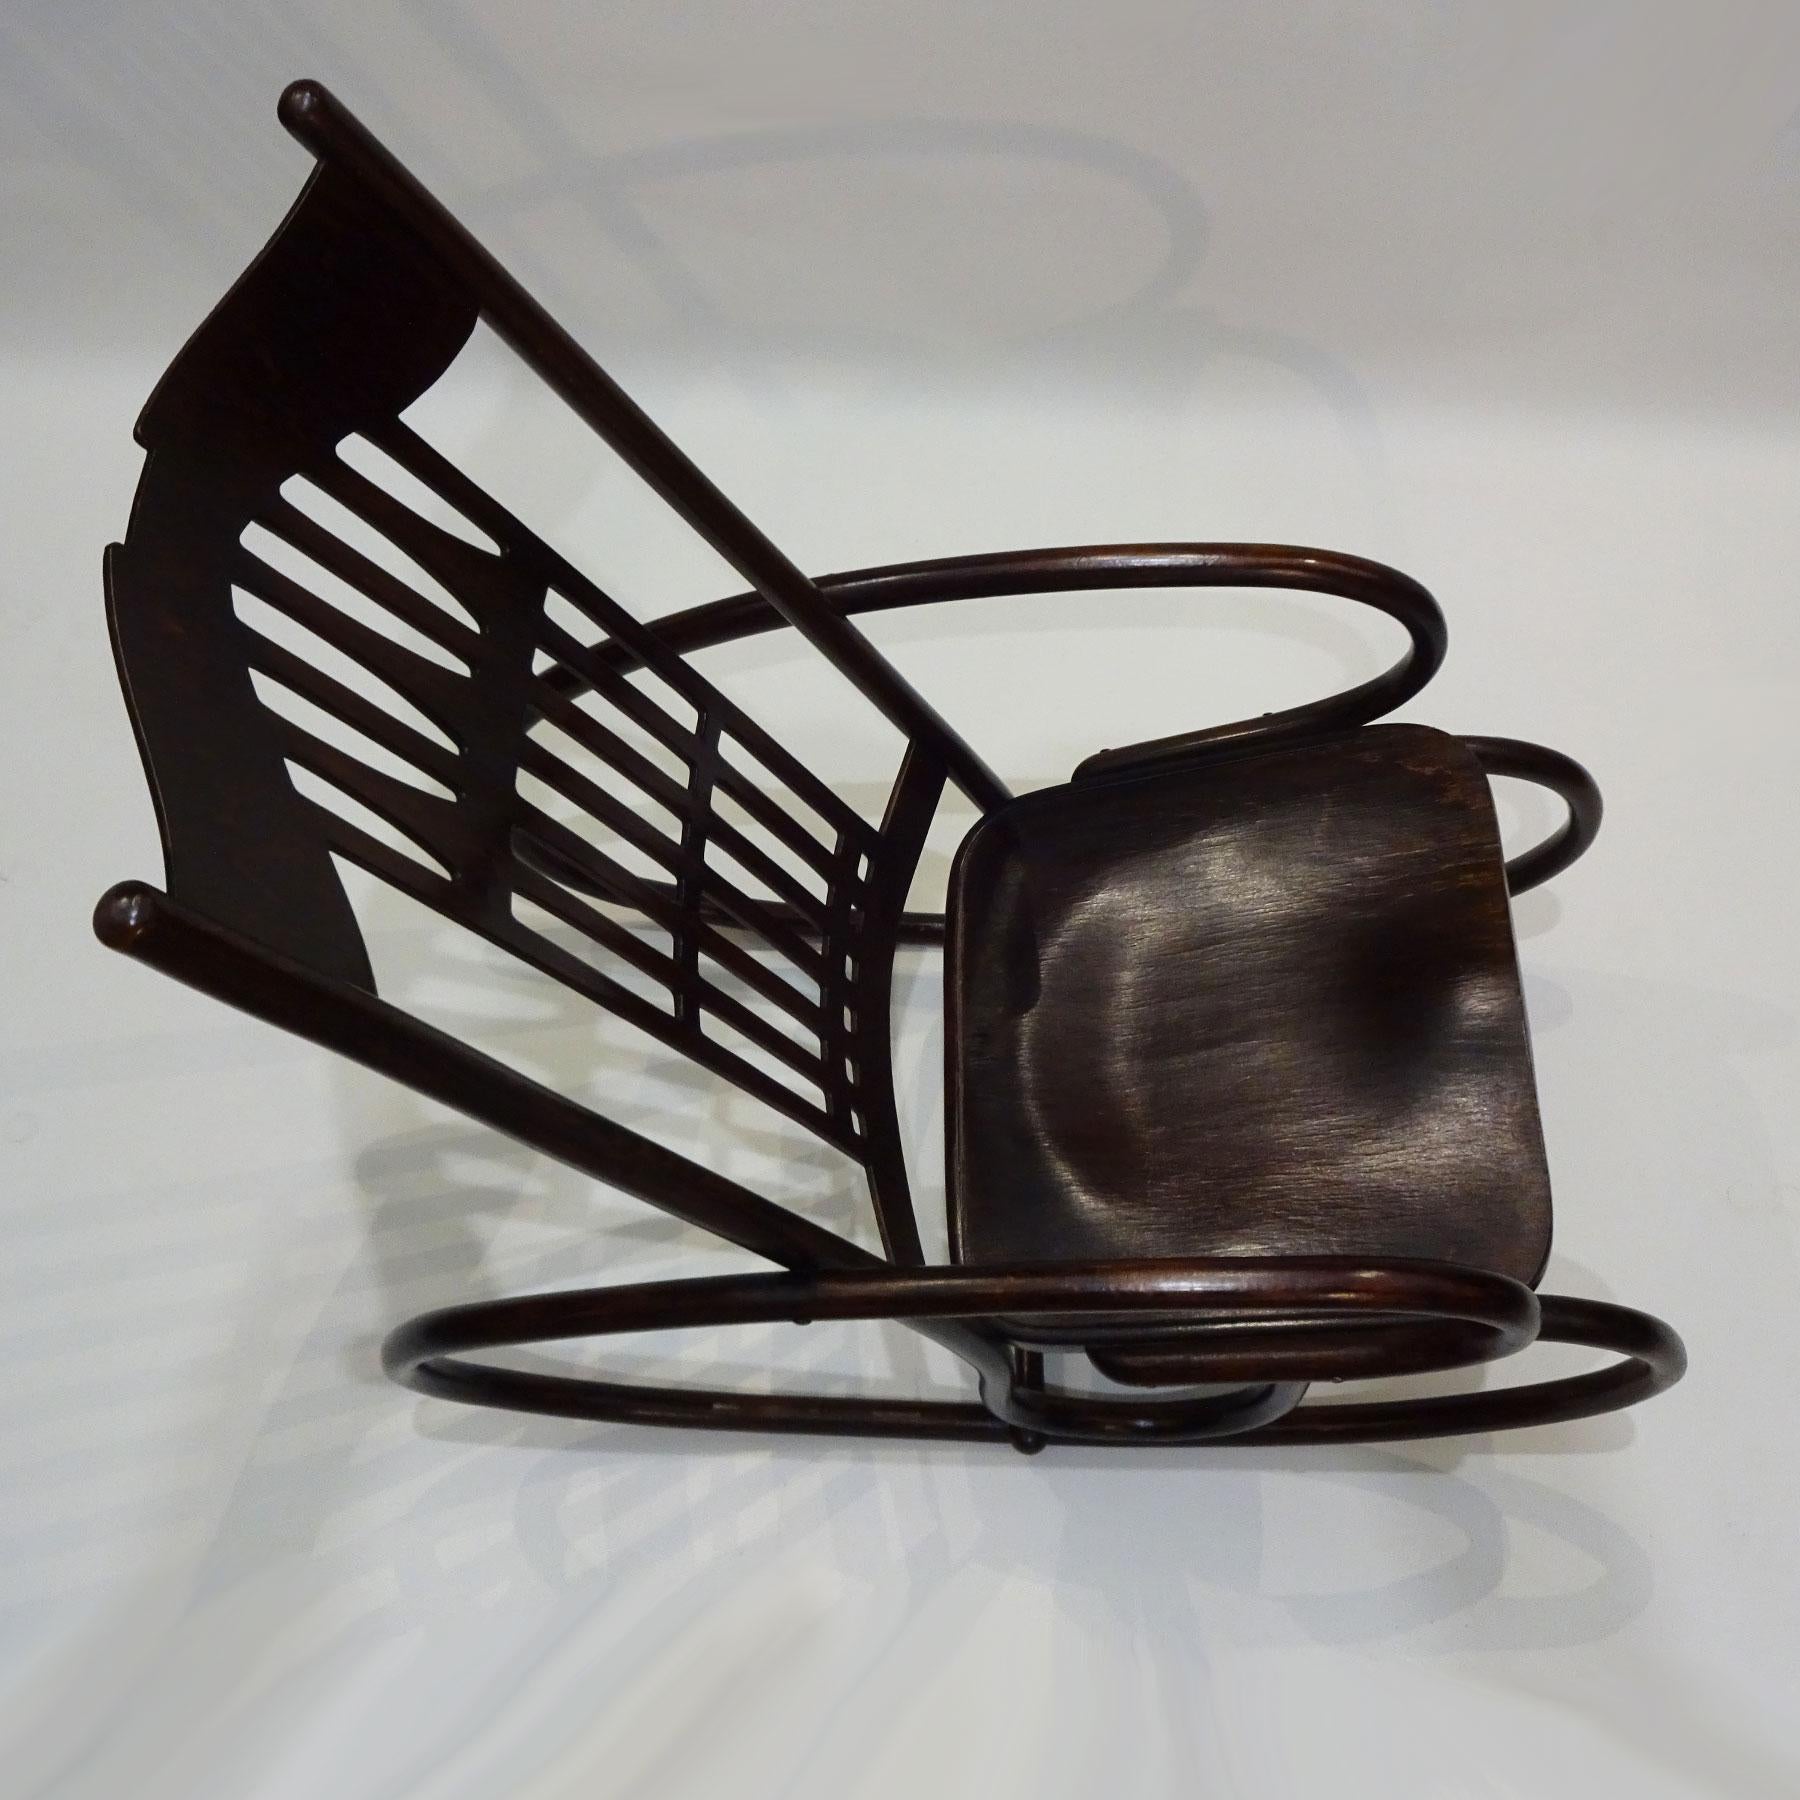 Beech Art Nouveau Gustav Siegel Designed Jacob and Josef Kohn Bentwood Rocking Chair